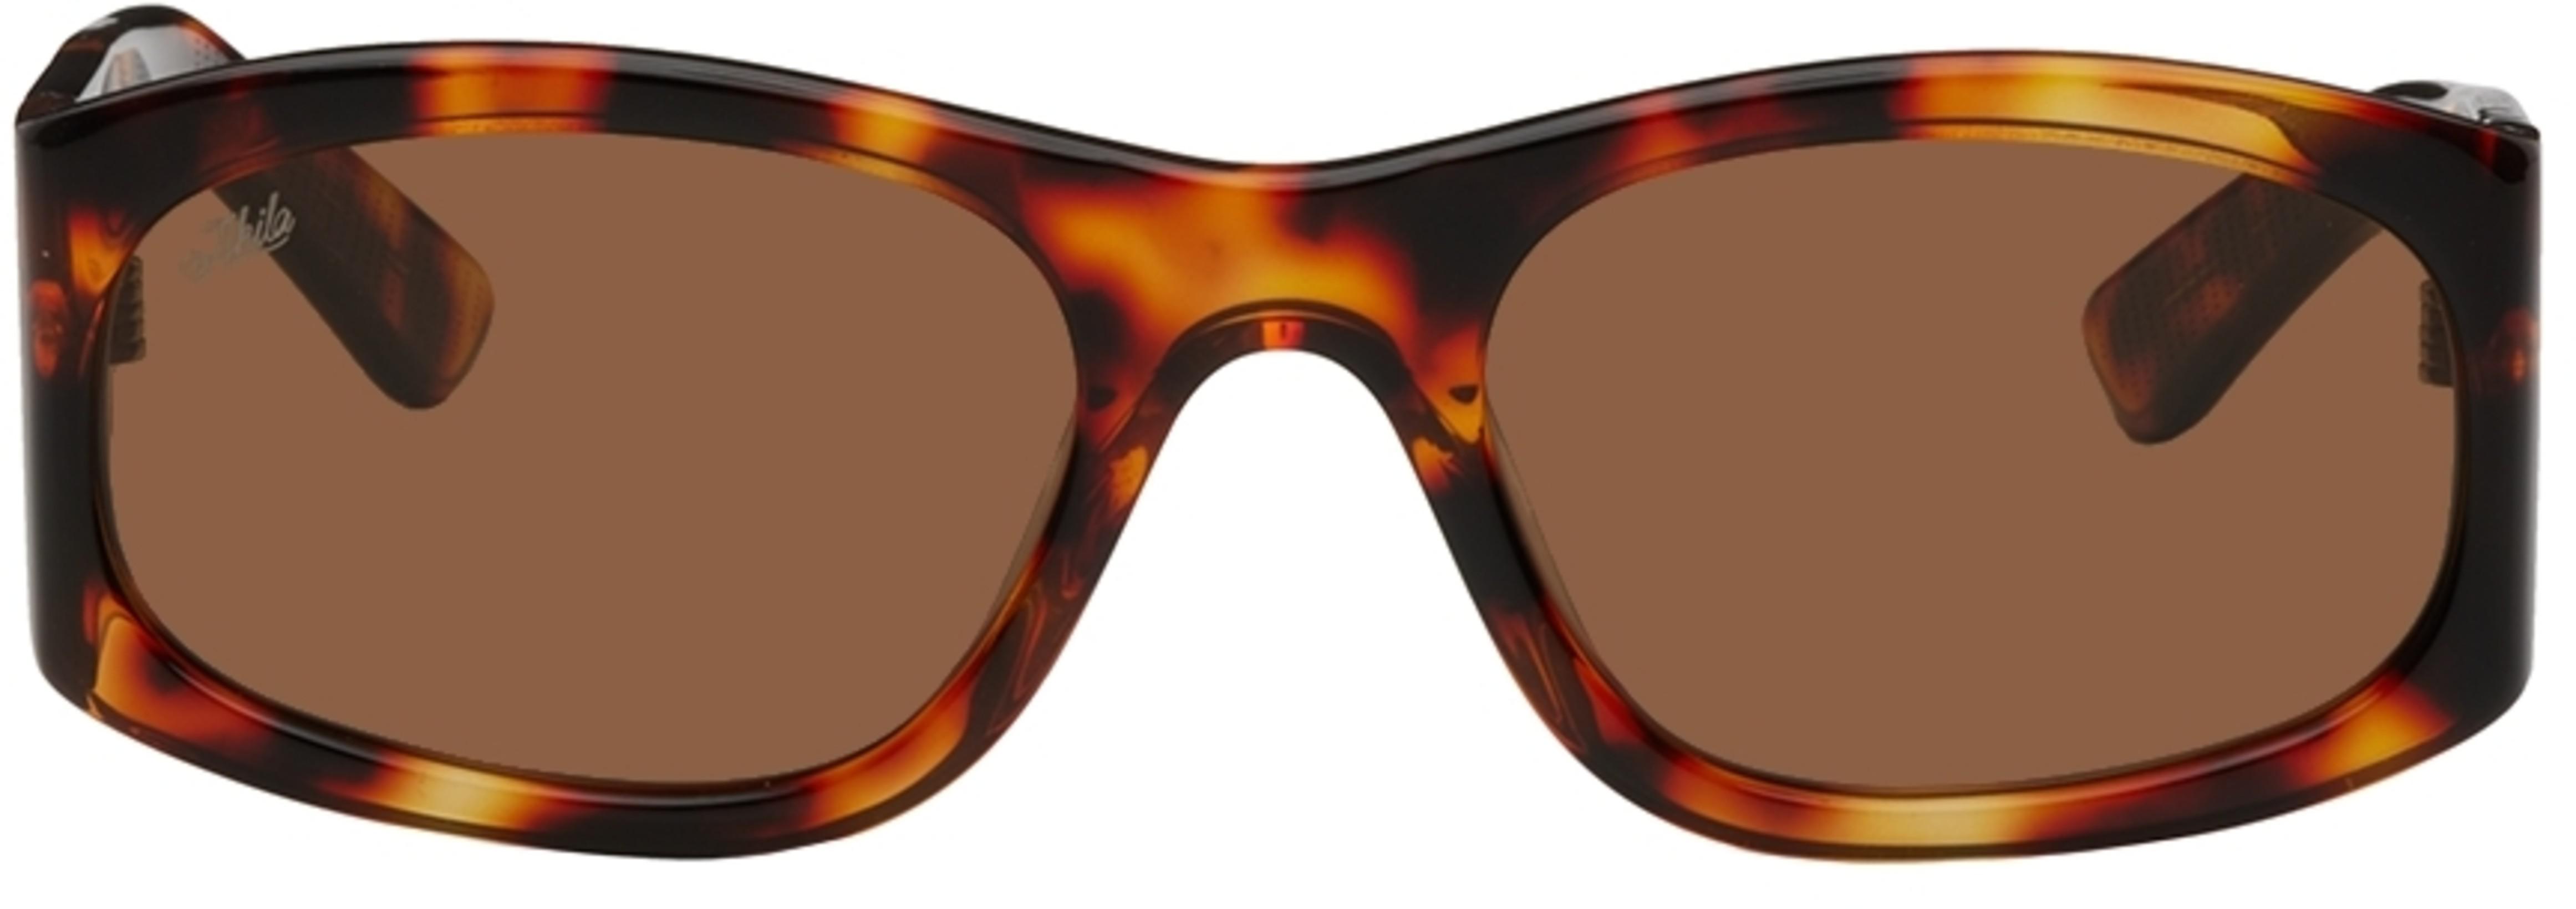 Tortoiseshell Eazy Sunglasses by AKILA